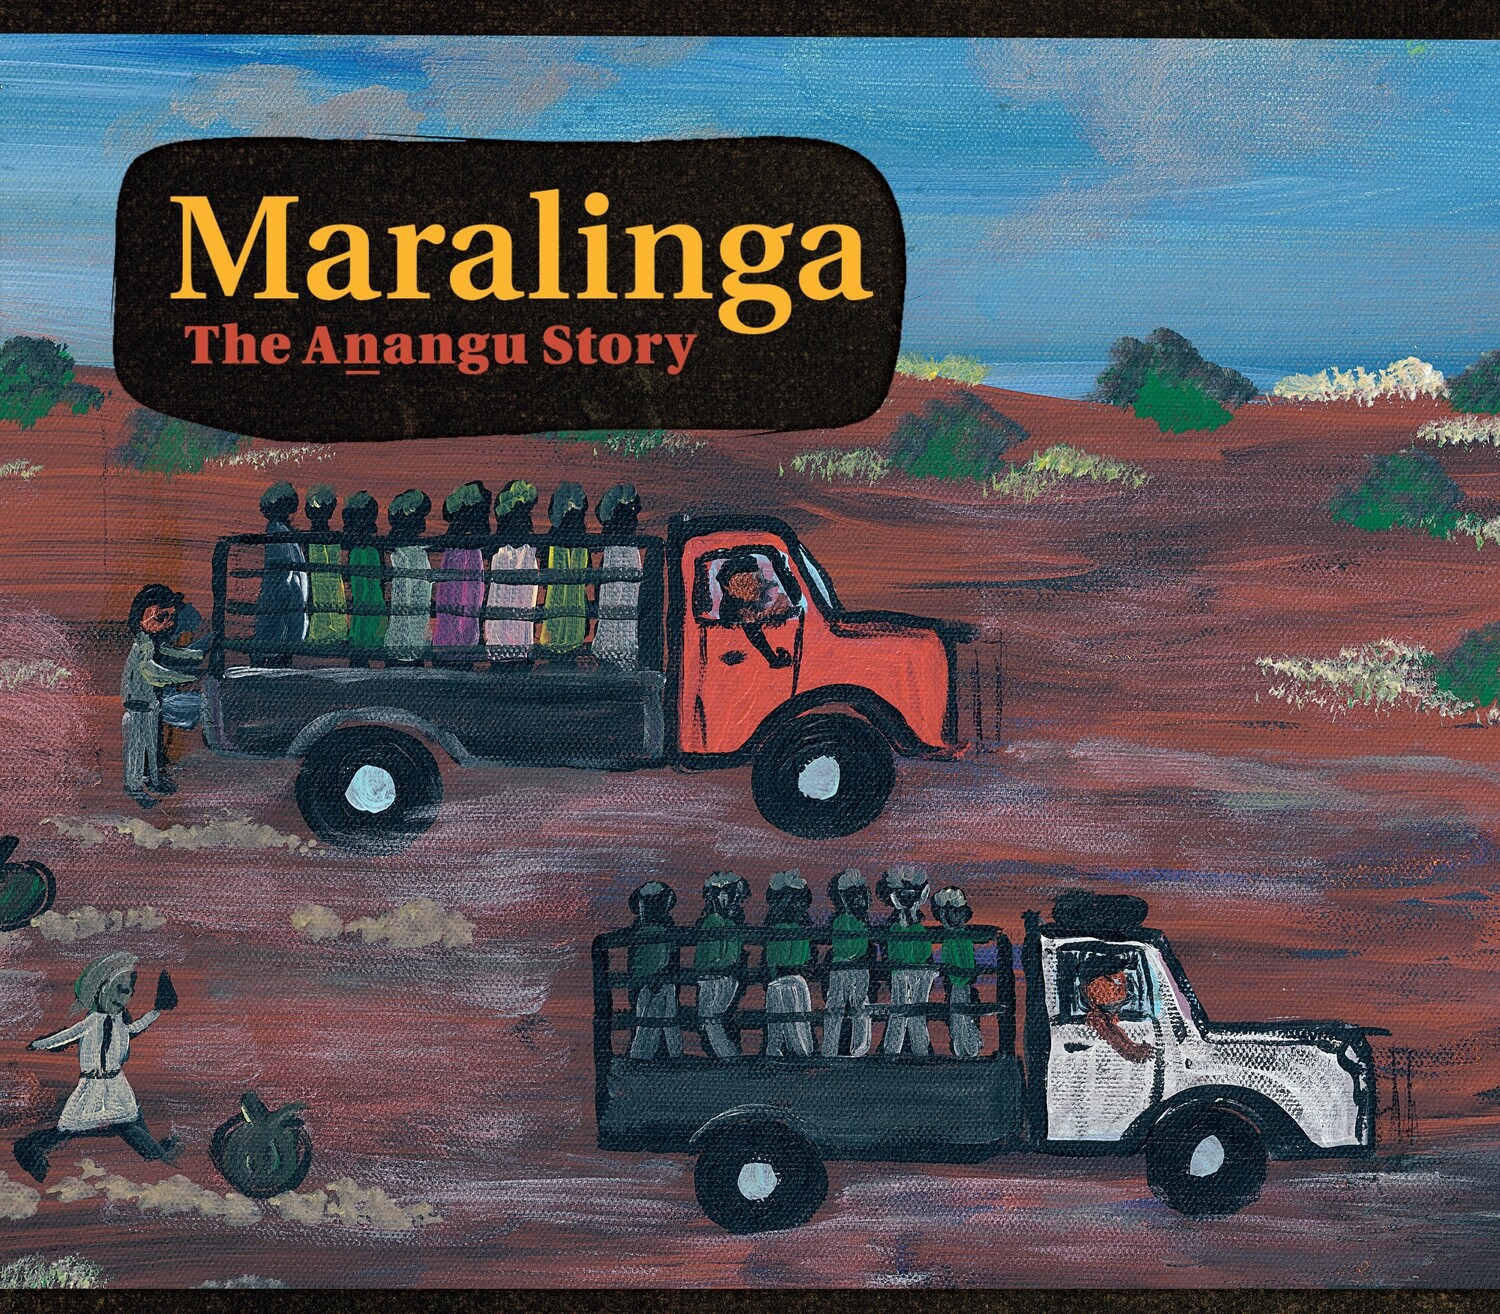 Maralinga, the Anangu Story